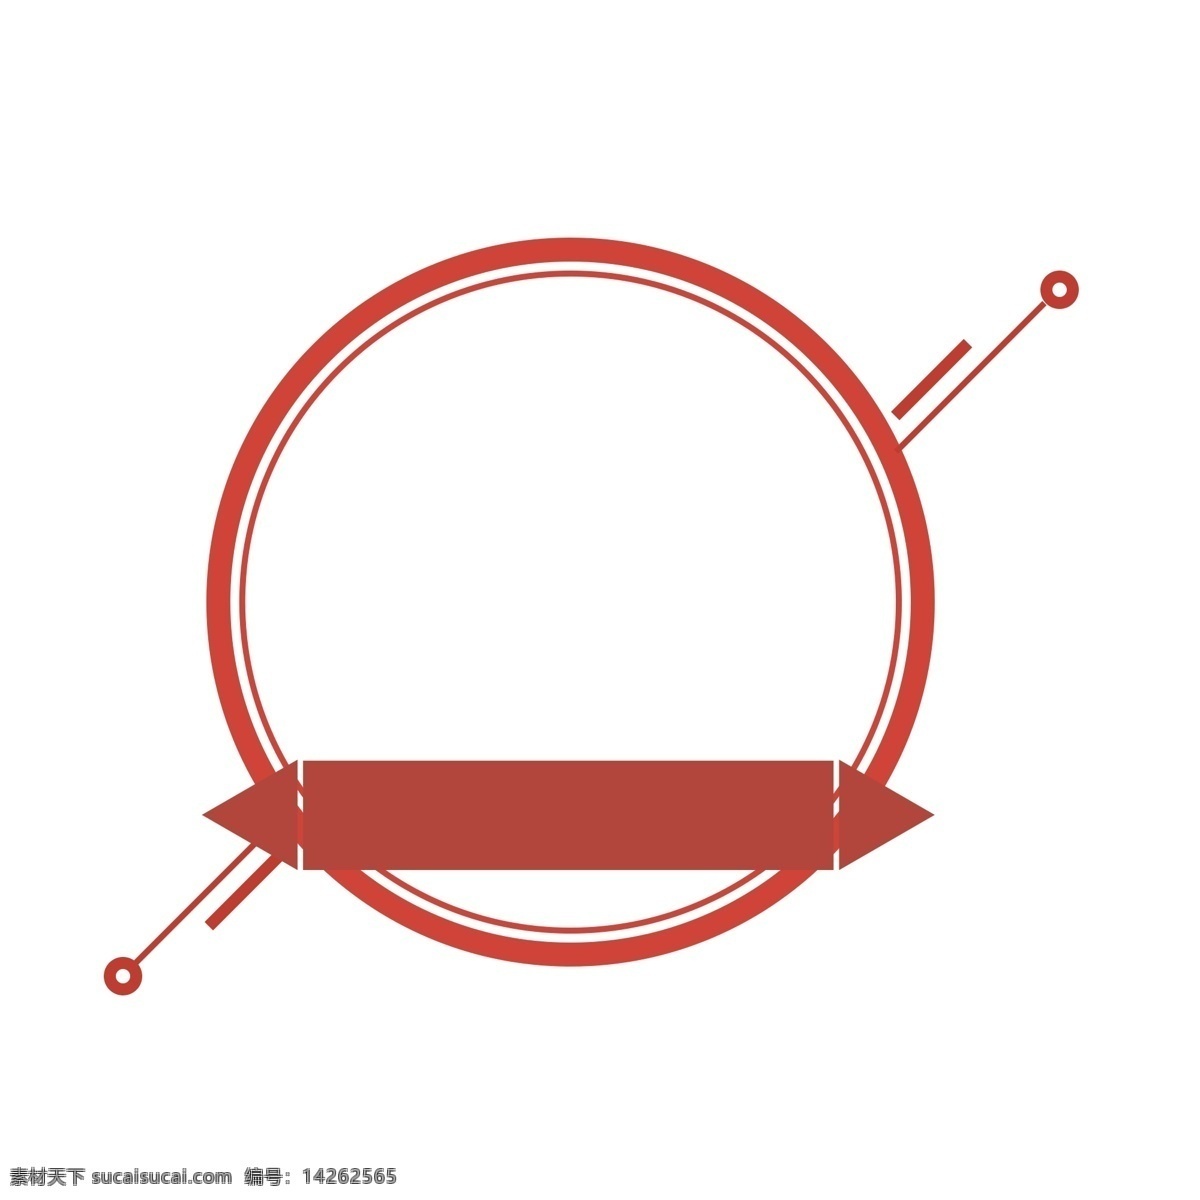 红色 圆圈 直线 矩形 组成 边框